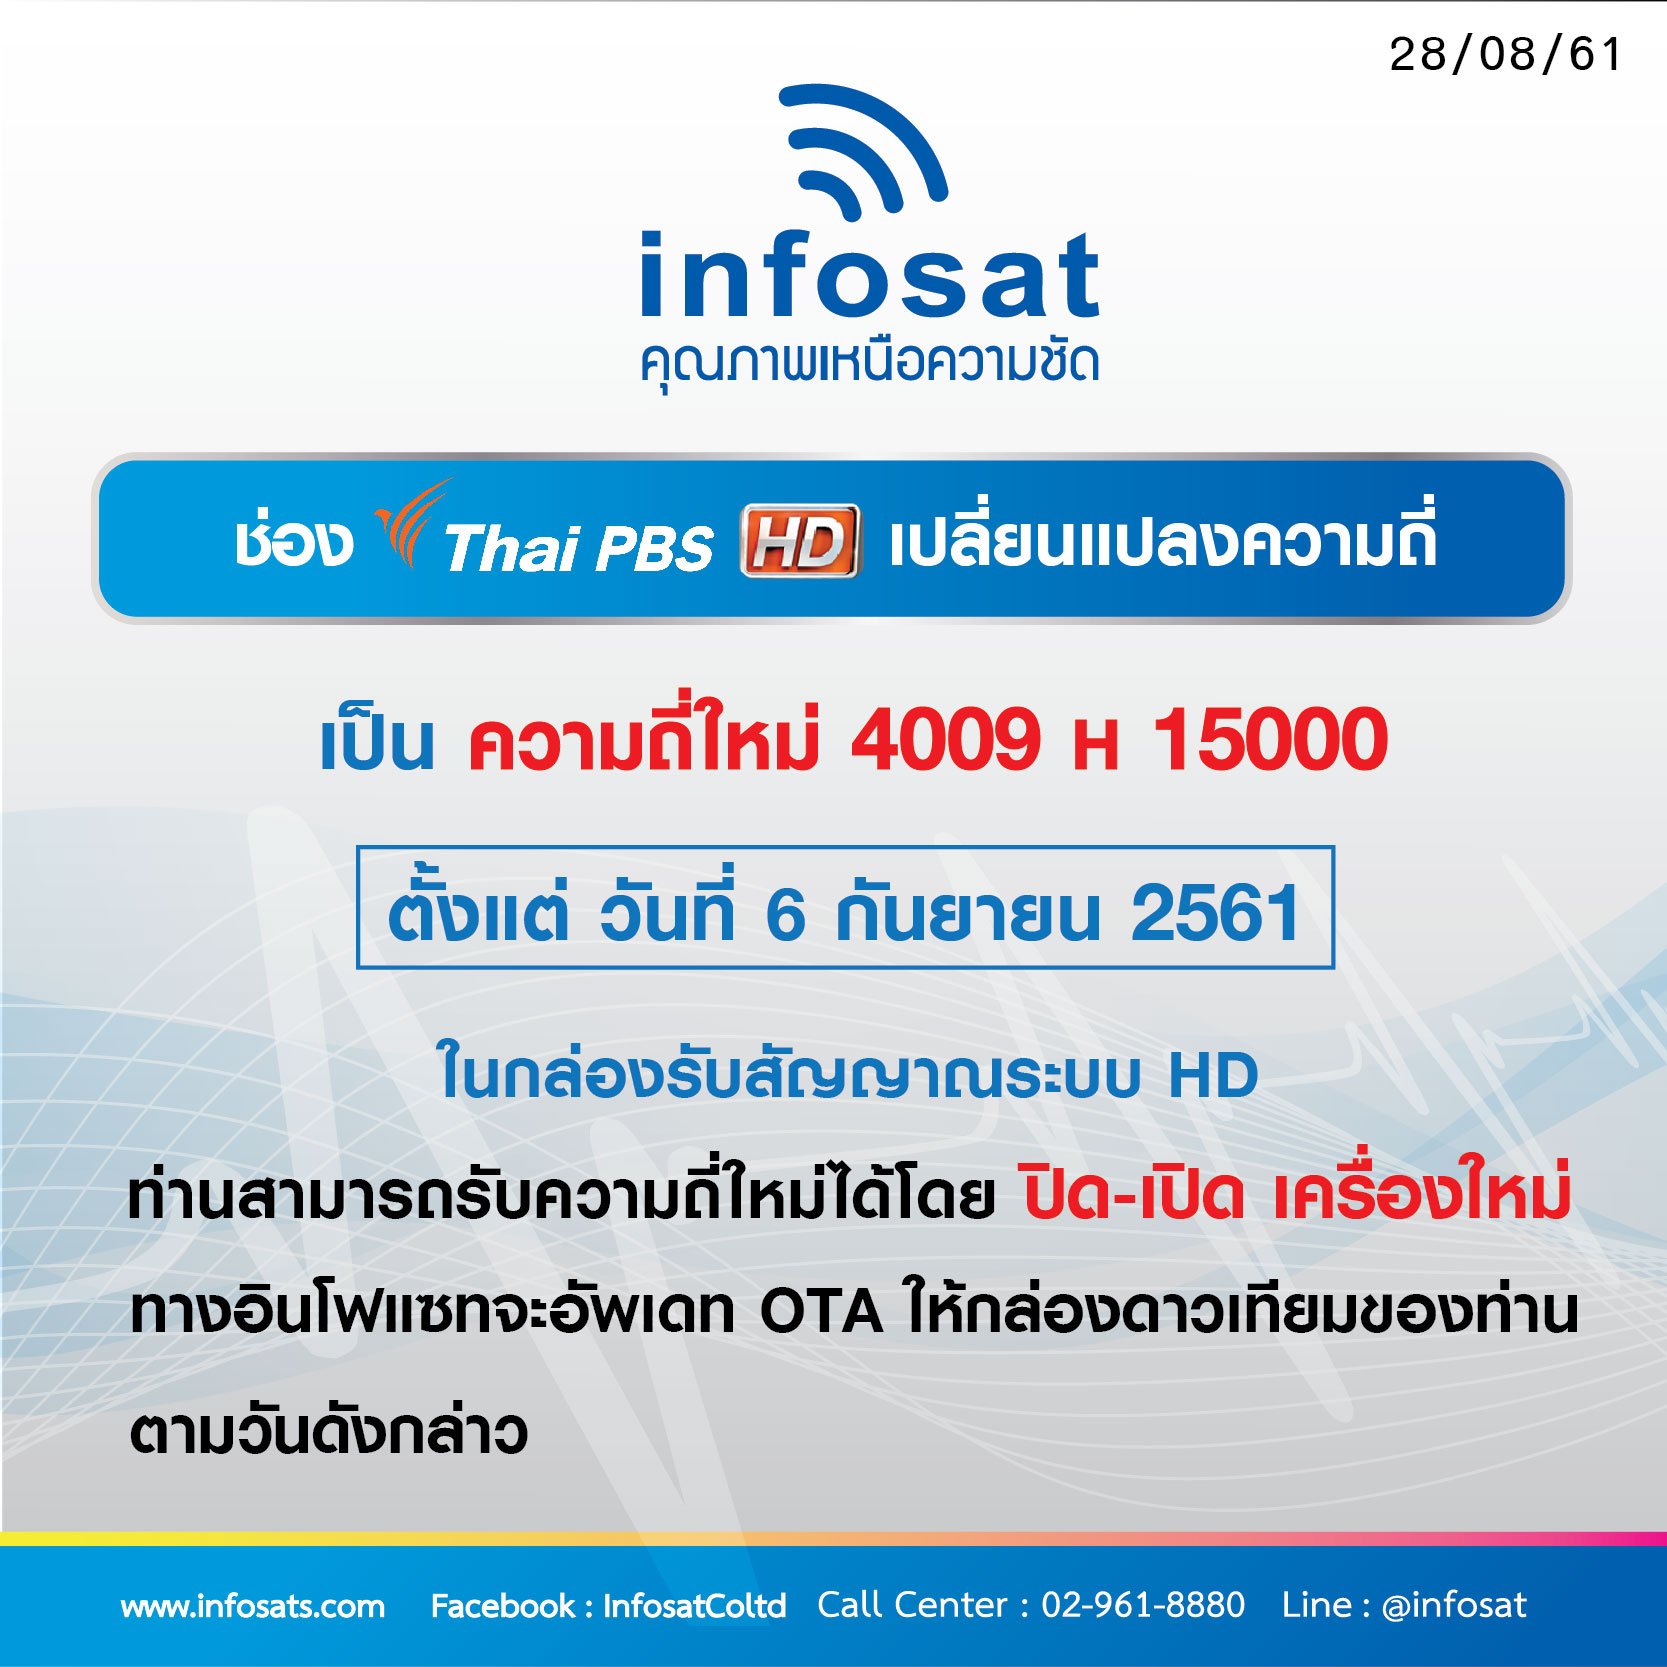 ช่อง Thai PBS HD เปลี่ยนแปลงความถี่